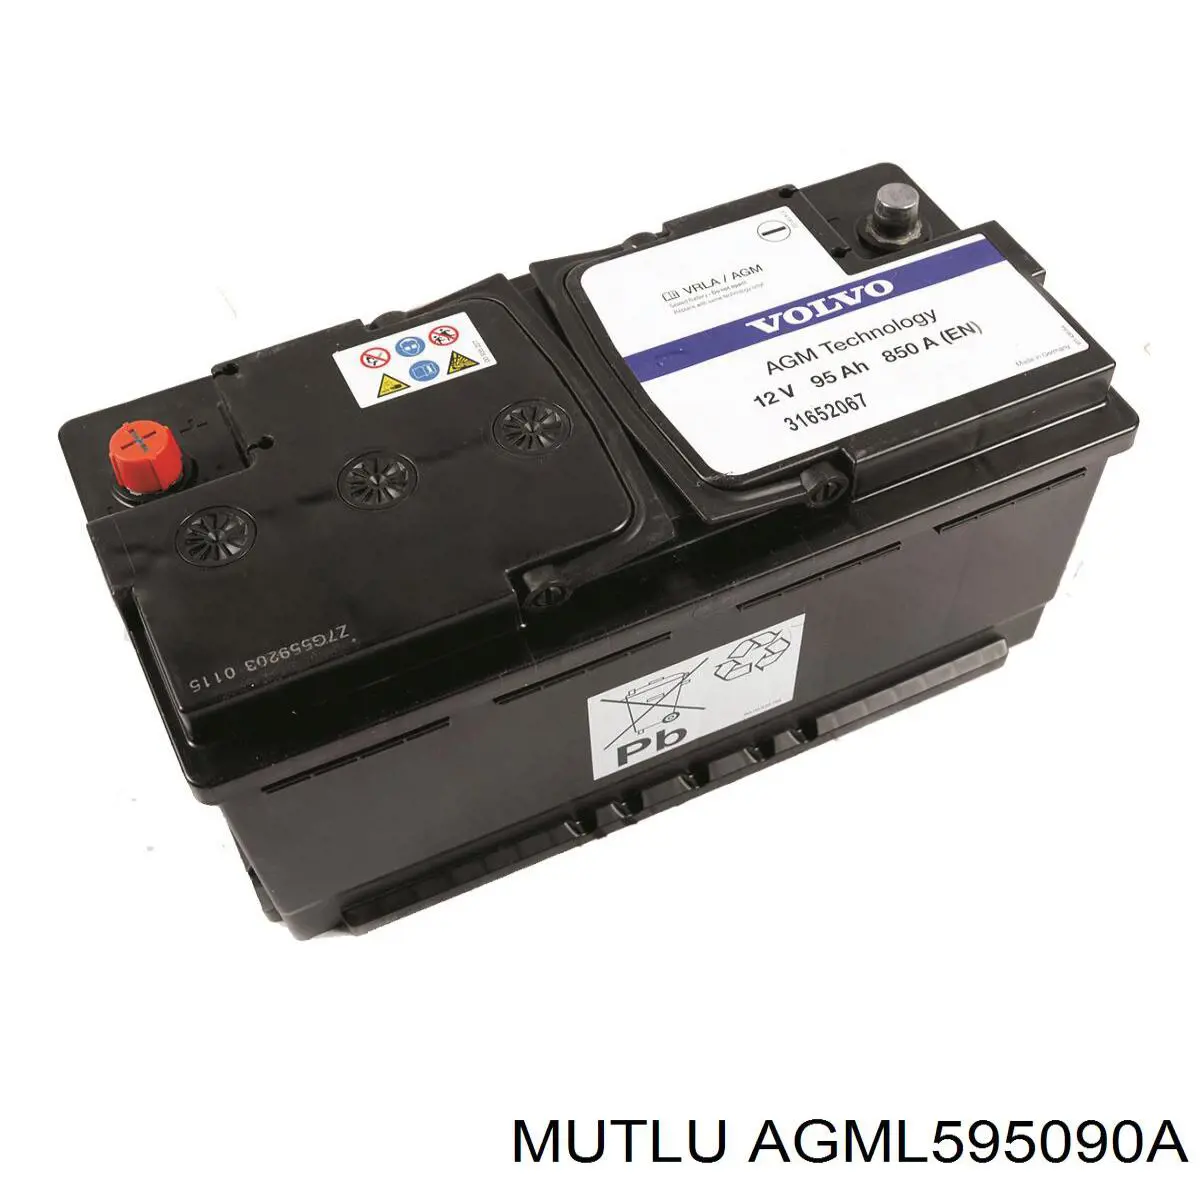 Аккумулятор Mutlu AGML595090A